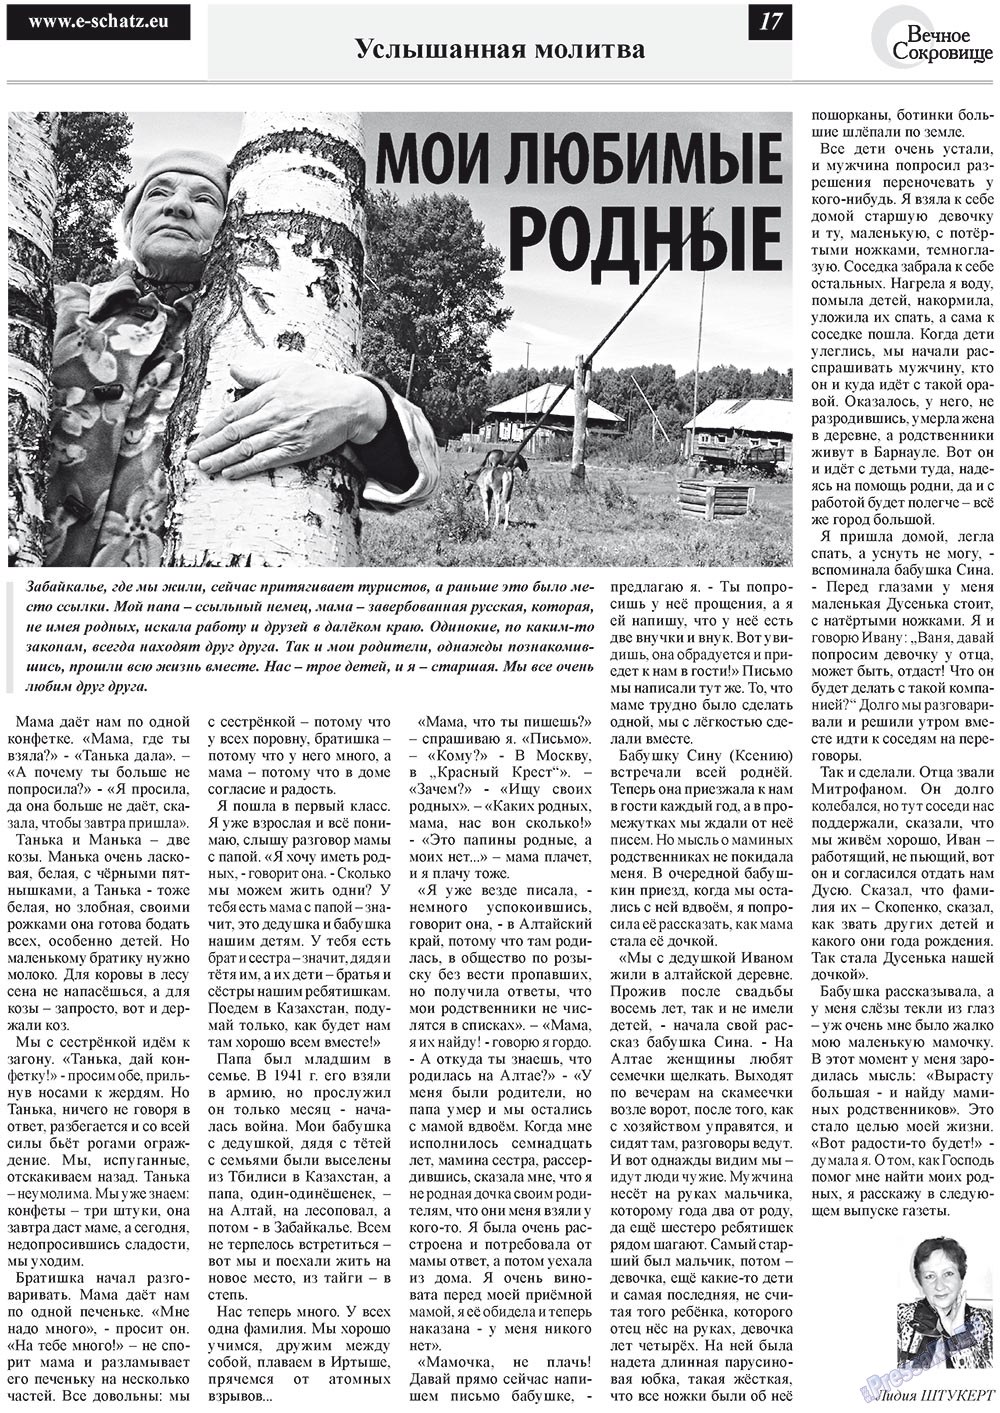 Вечное сокровище (газета). 2012 год, номер 4, стр. 17